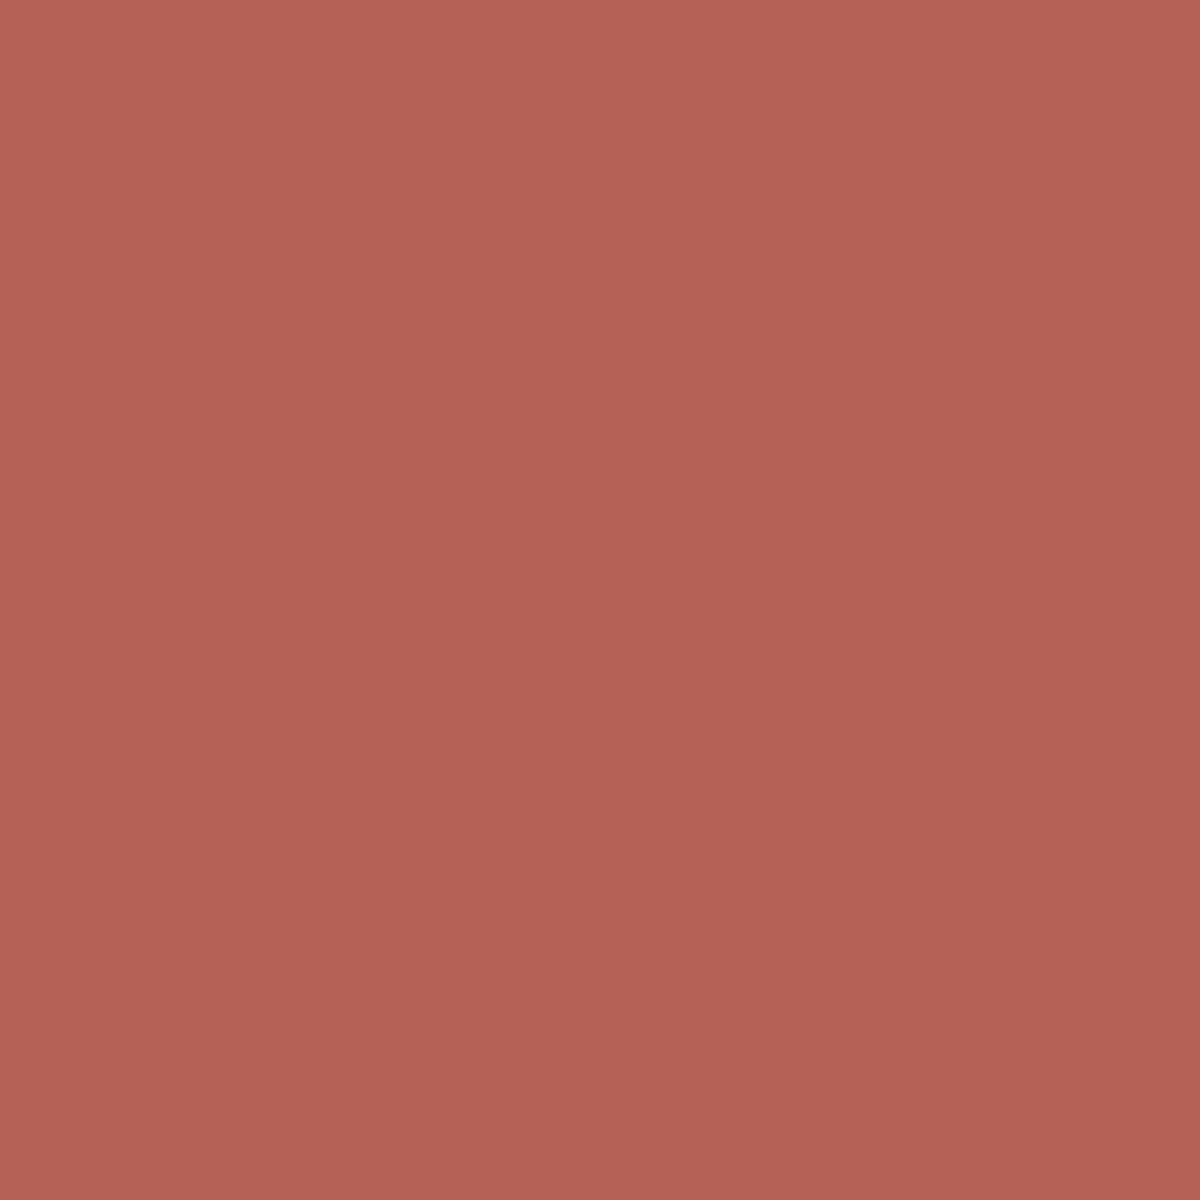 Crimson 1299